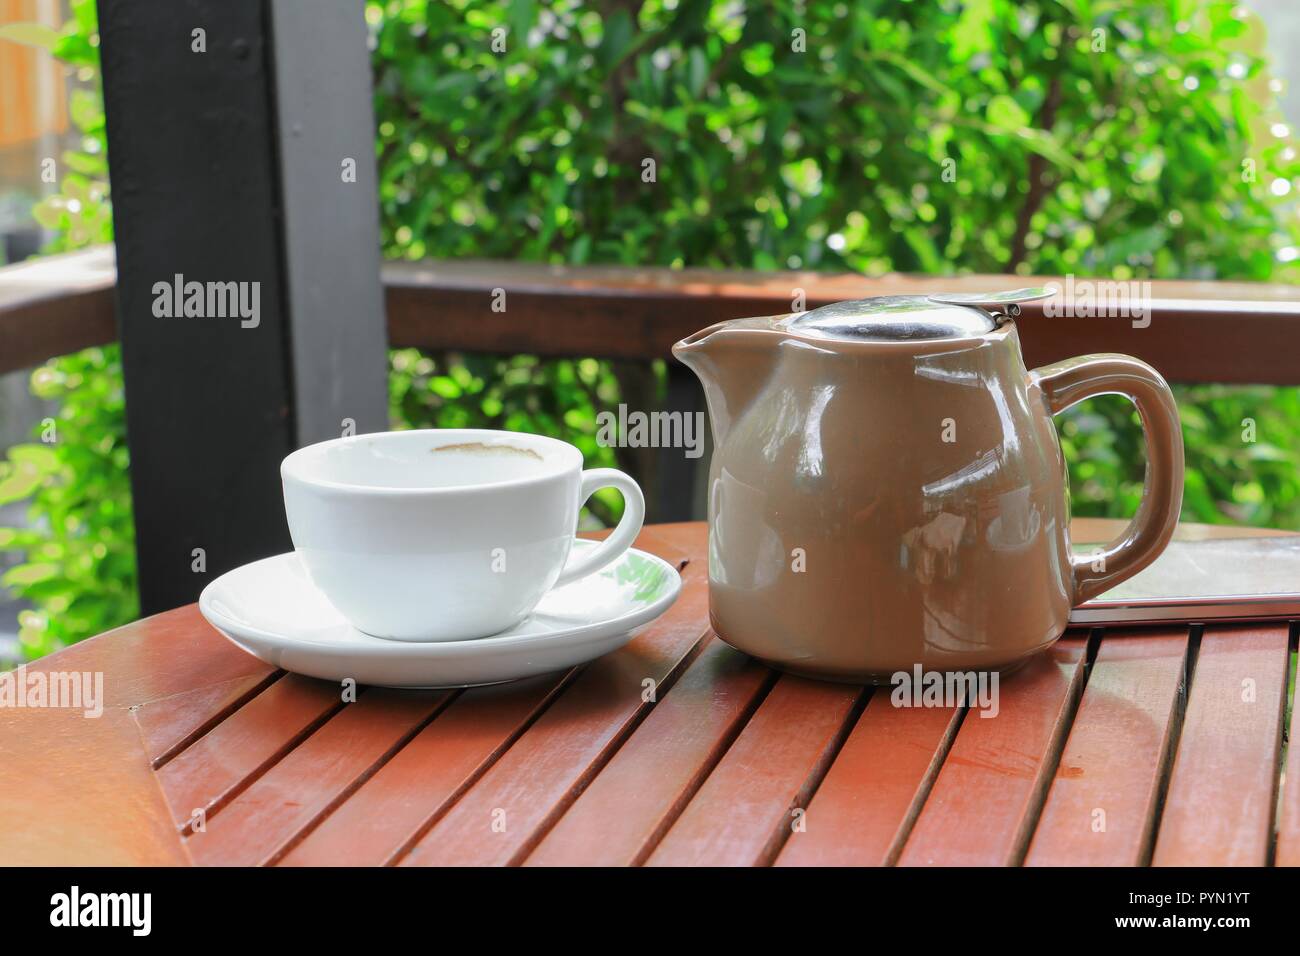 Jarra taza de café y té en el fondo del piso de madera Fotografía de stock  - Alamy